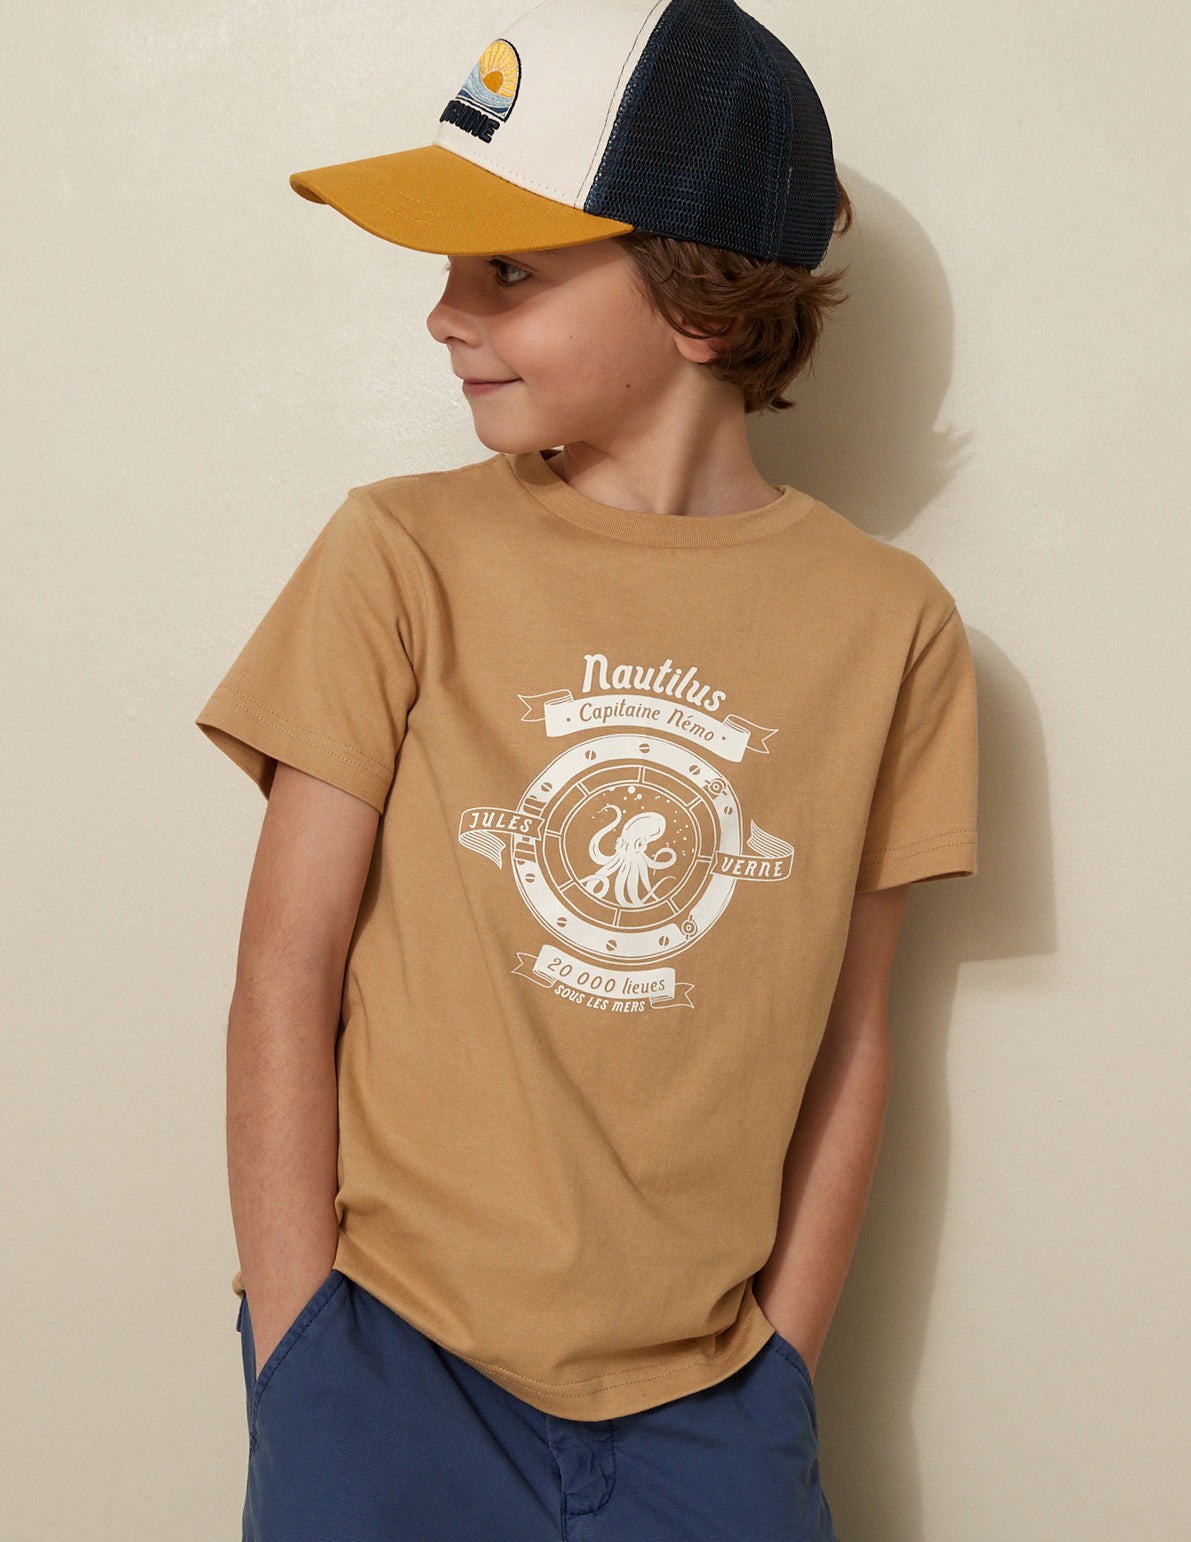 T-shirt Enfant Collection Jules Verne - Coton biologique